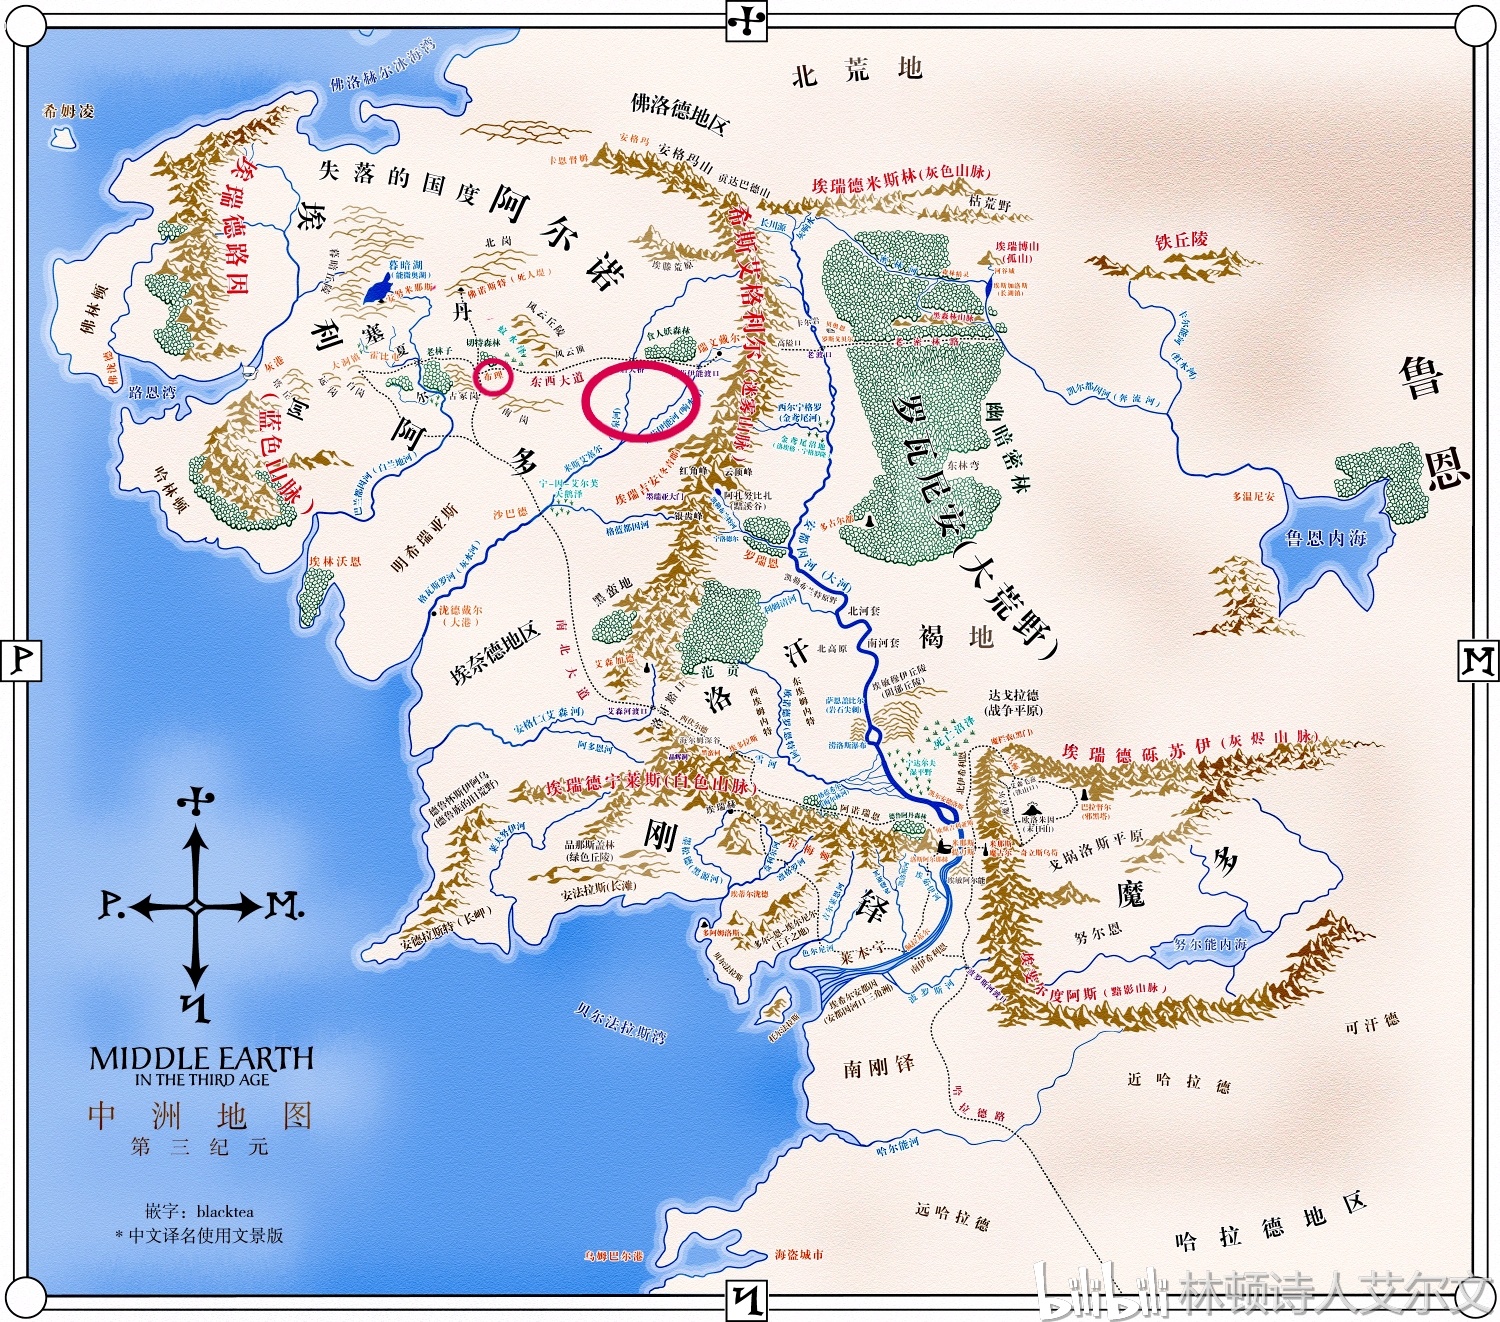 《指环王》和中土世界:北方王国阿尔诺的兴亡史